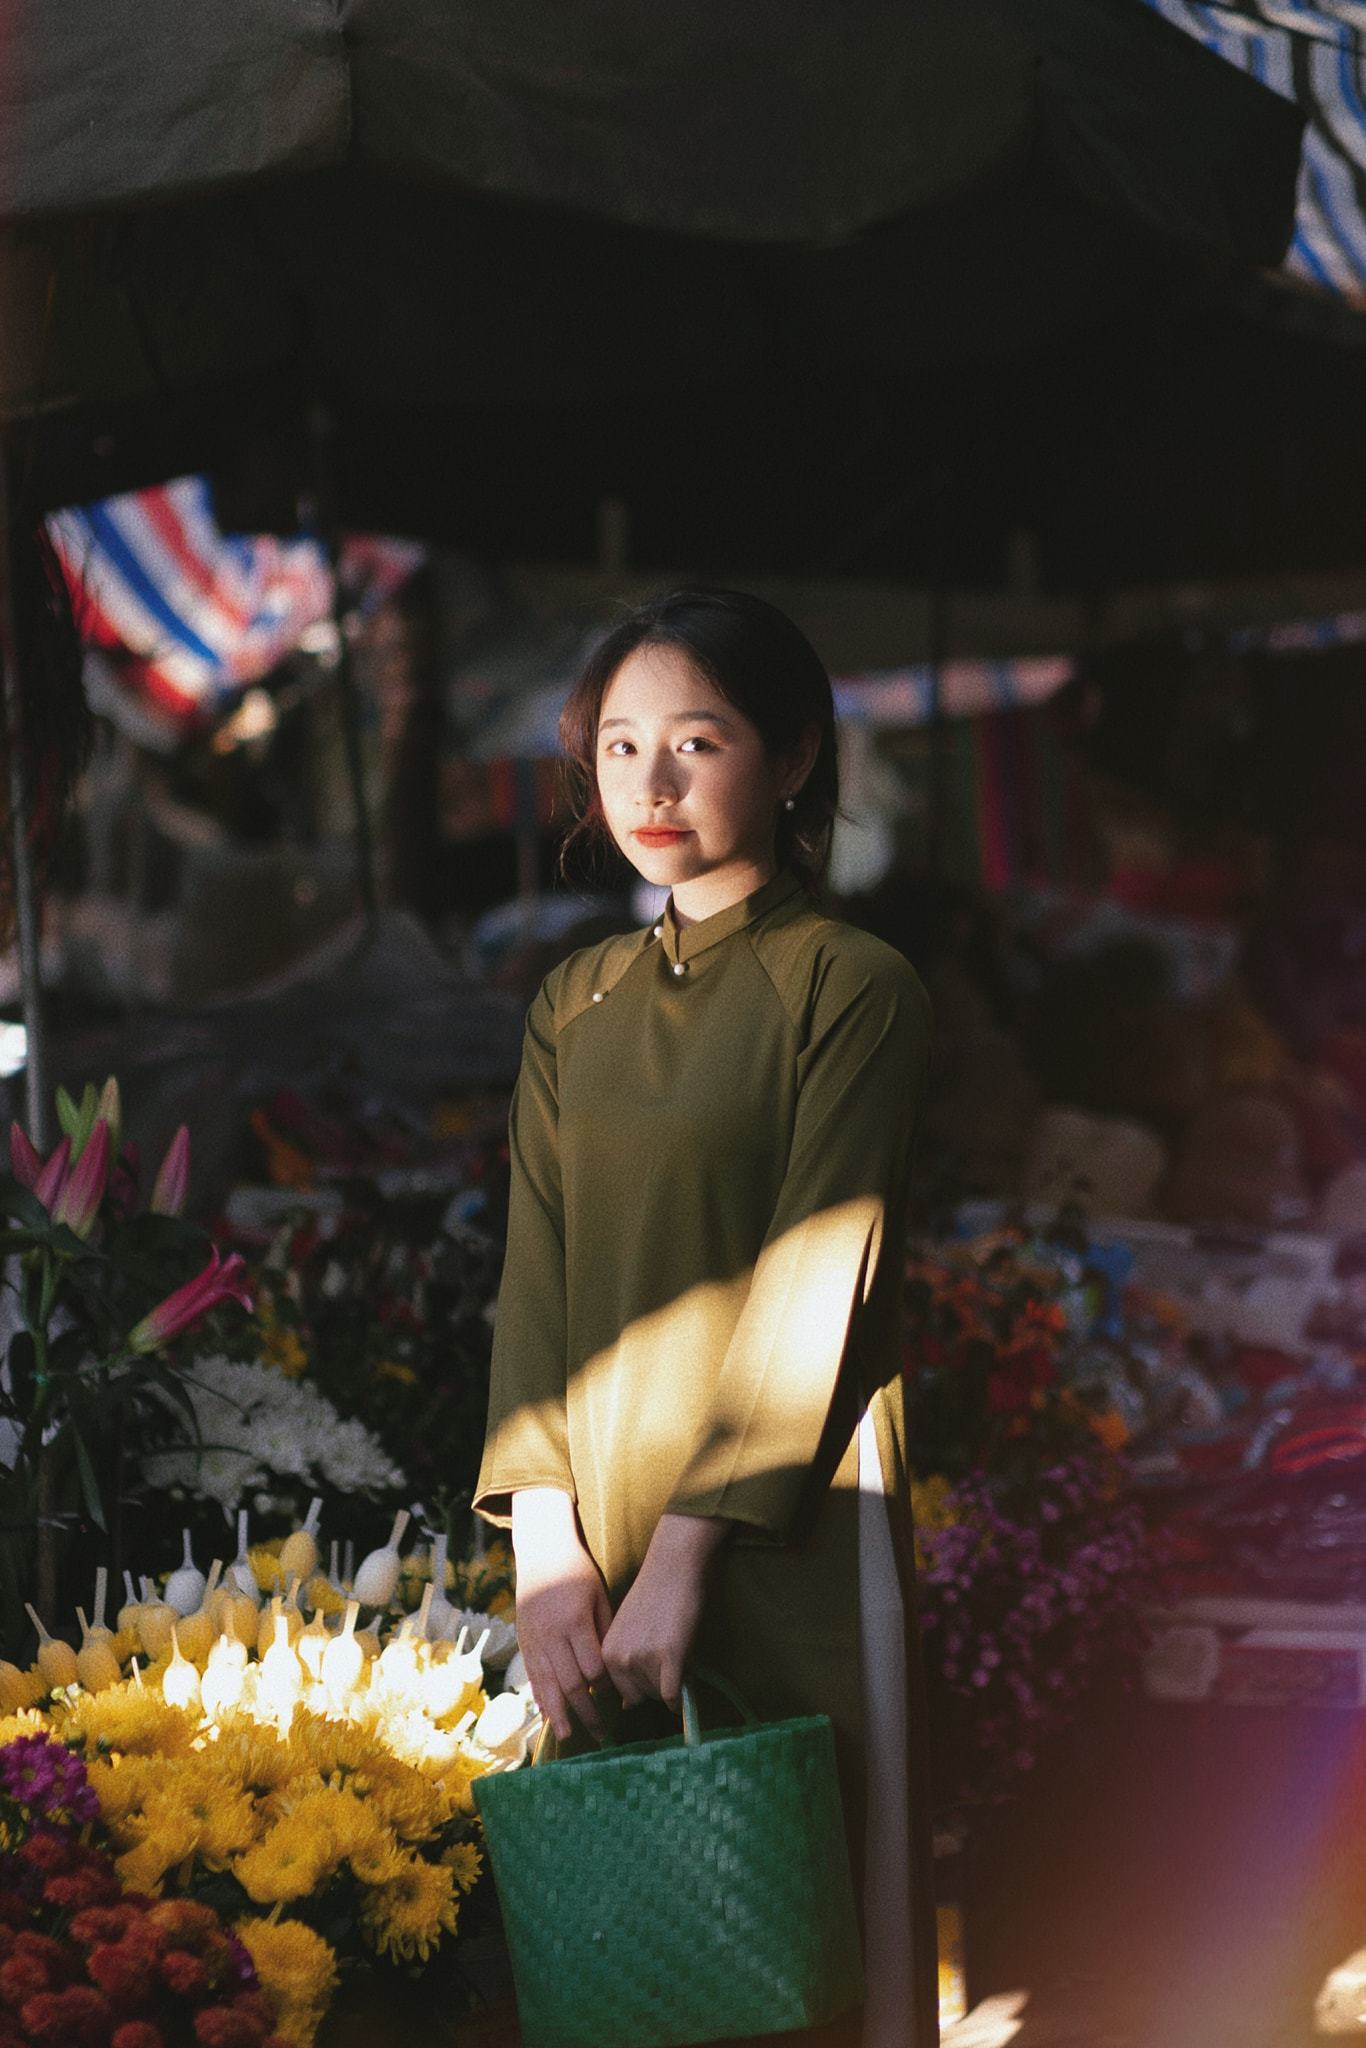 Chợ Tết truyền thống: Hãy cùng tham gia vào chuyến hành trình khám phá Chợ Tết truyền thống và tìm hiểu thêm về nền văn hóa Việt Nam. Bộ sưu tập hình ảnh này sẽ đưa bạn đến những góc nhỏ xinh đẹp của chợ để trải nghiệm những sản phẩm đặc trưng và thưởng thức những món ăn ngon tuyệt vời.